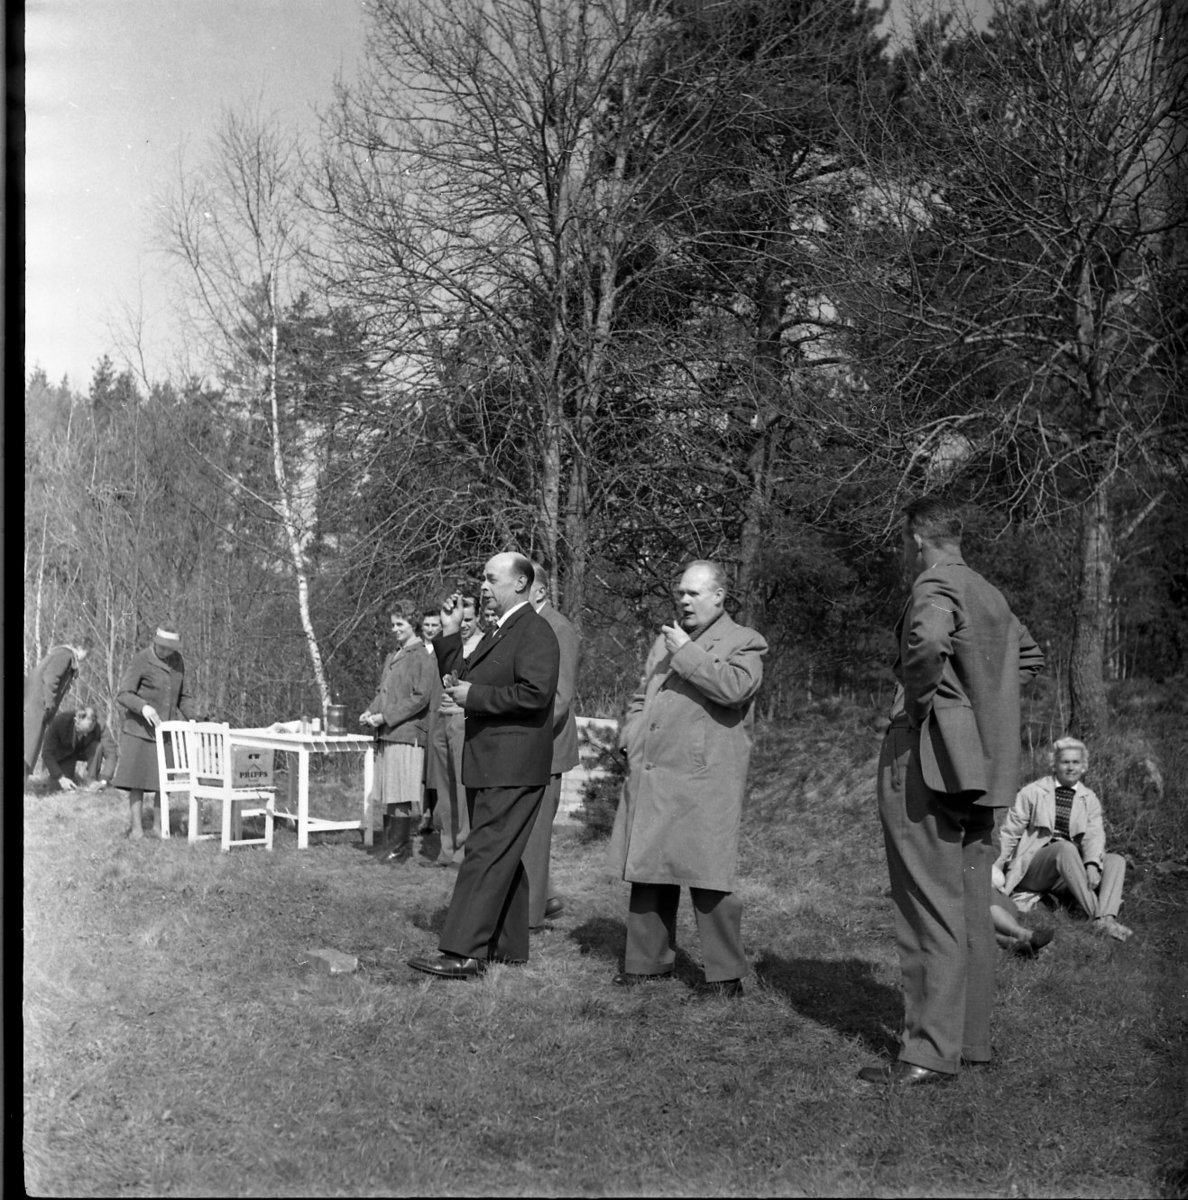 Män och kvinnor ute i det gröna. En grupp med trädgårdsmöbler till vänster. I bildens centrum en man i mörk kostym som sannolikt spelar Dart. Intill står en man pipa i munnen, det är Holger Andersson.